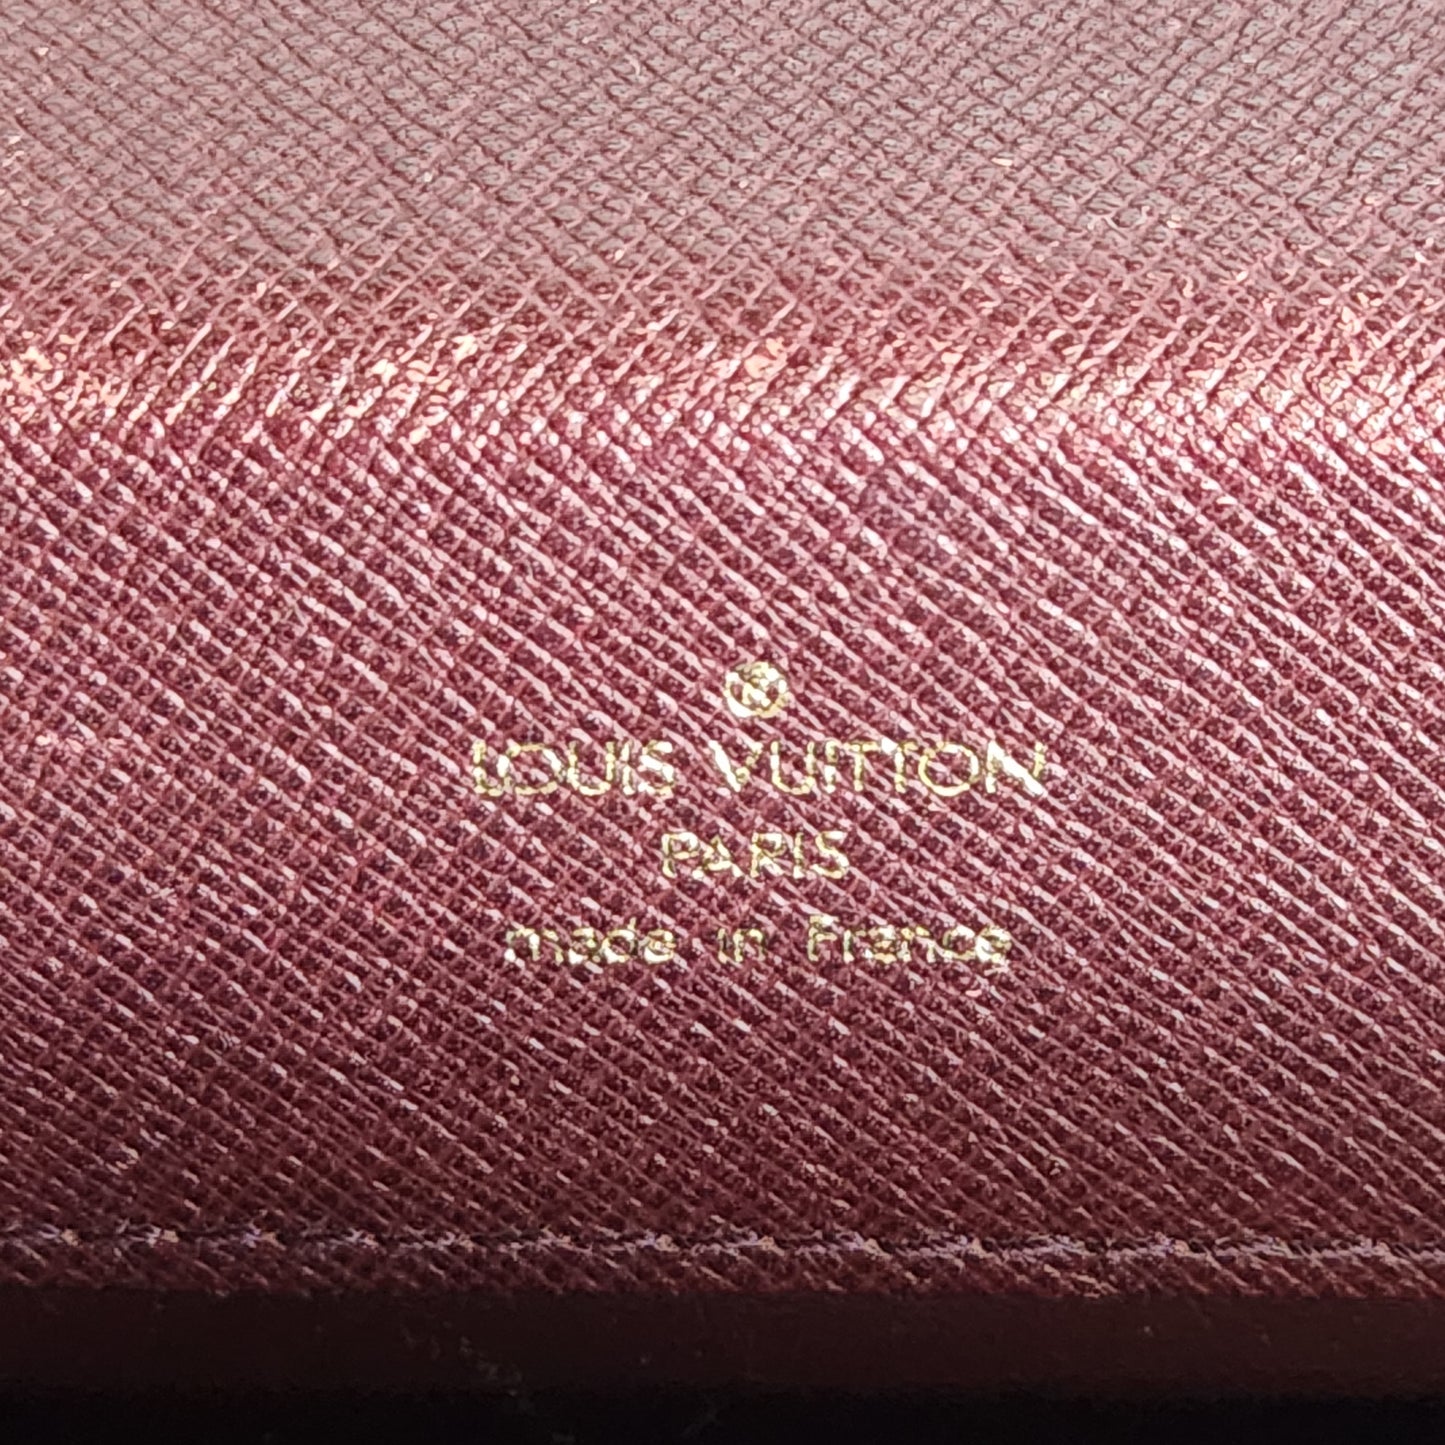 Louis Vuitton Leather Brief Case Messenger Bag Vintage Brown